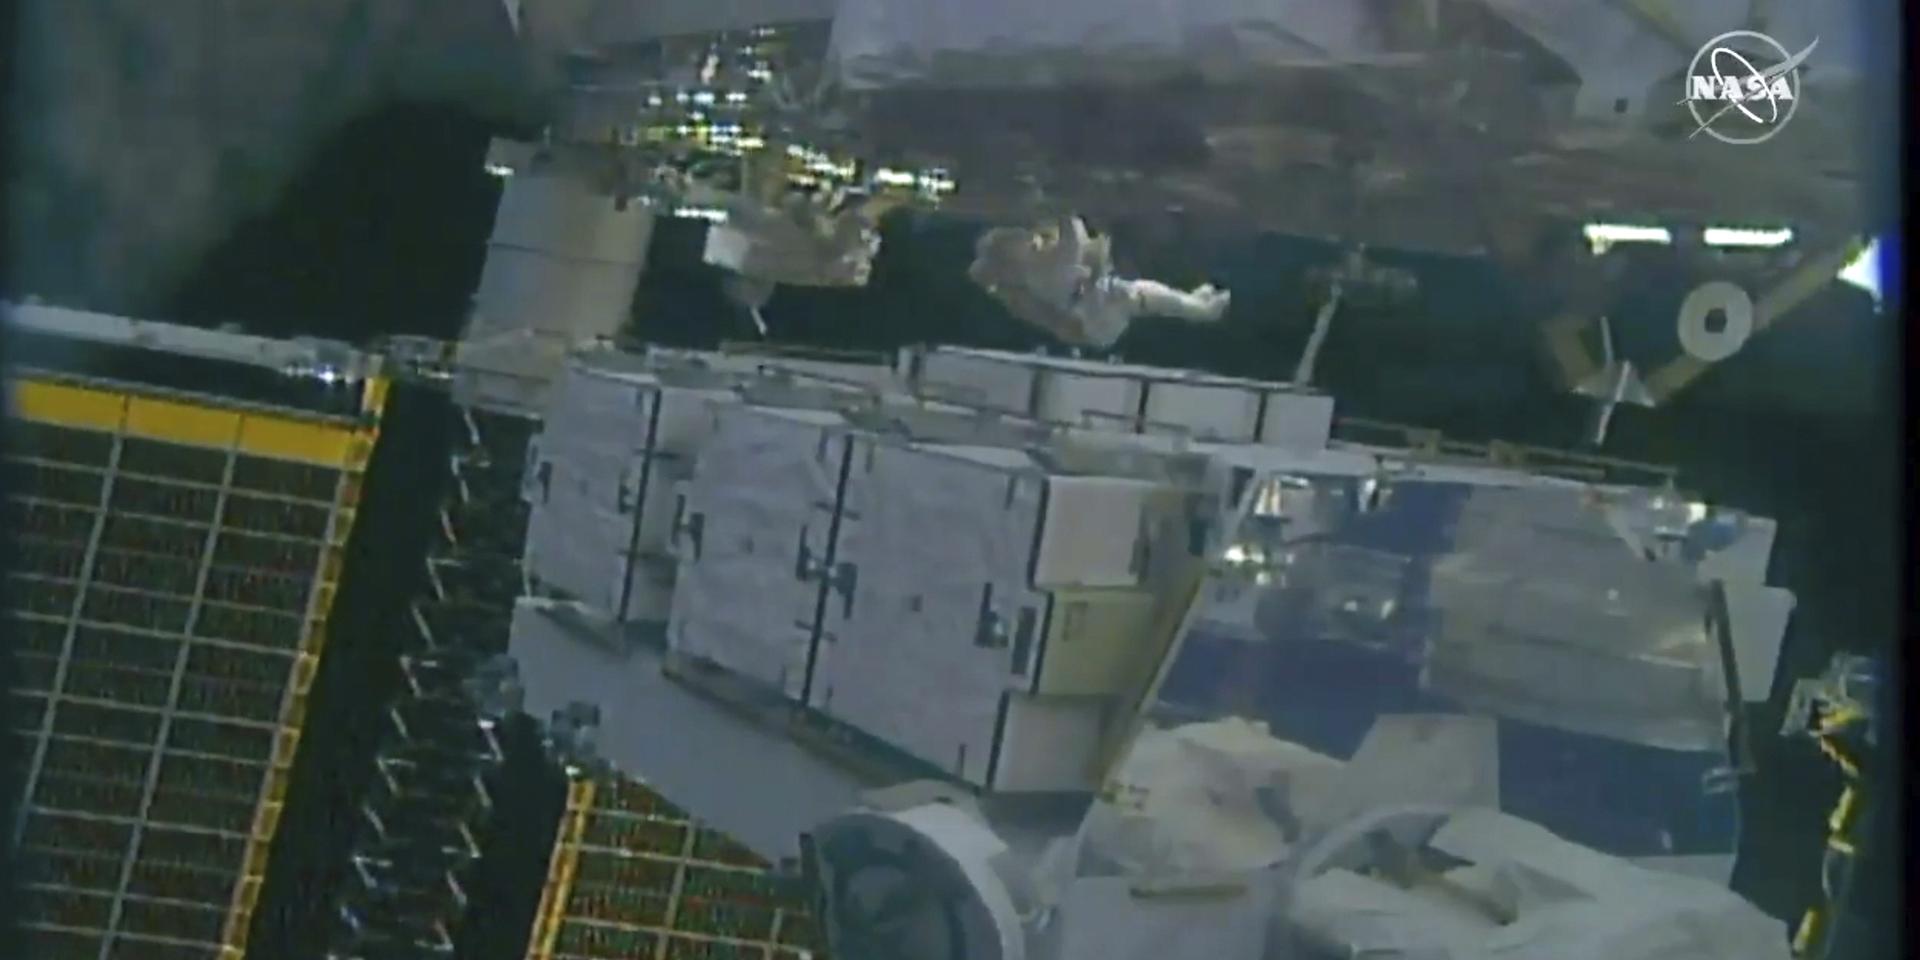 Nasa-astronauterna Jessica Meir och Christina Koch under onsdagens rymdpromenad. Uppdraget var att uppgradera batterisystemet.